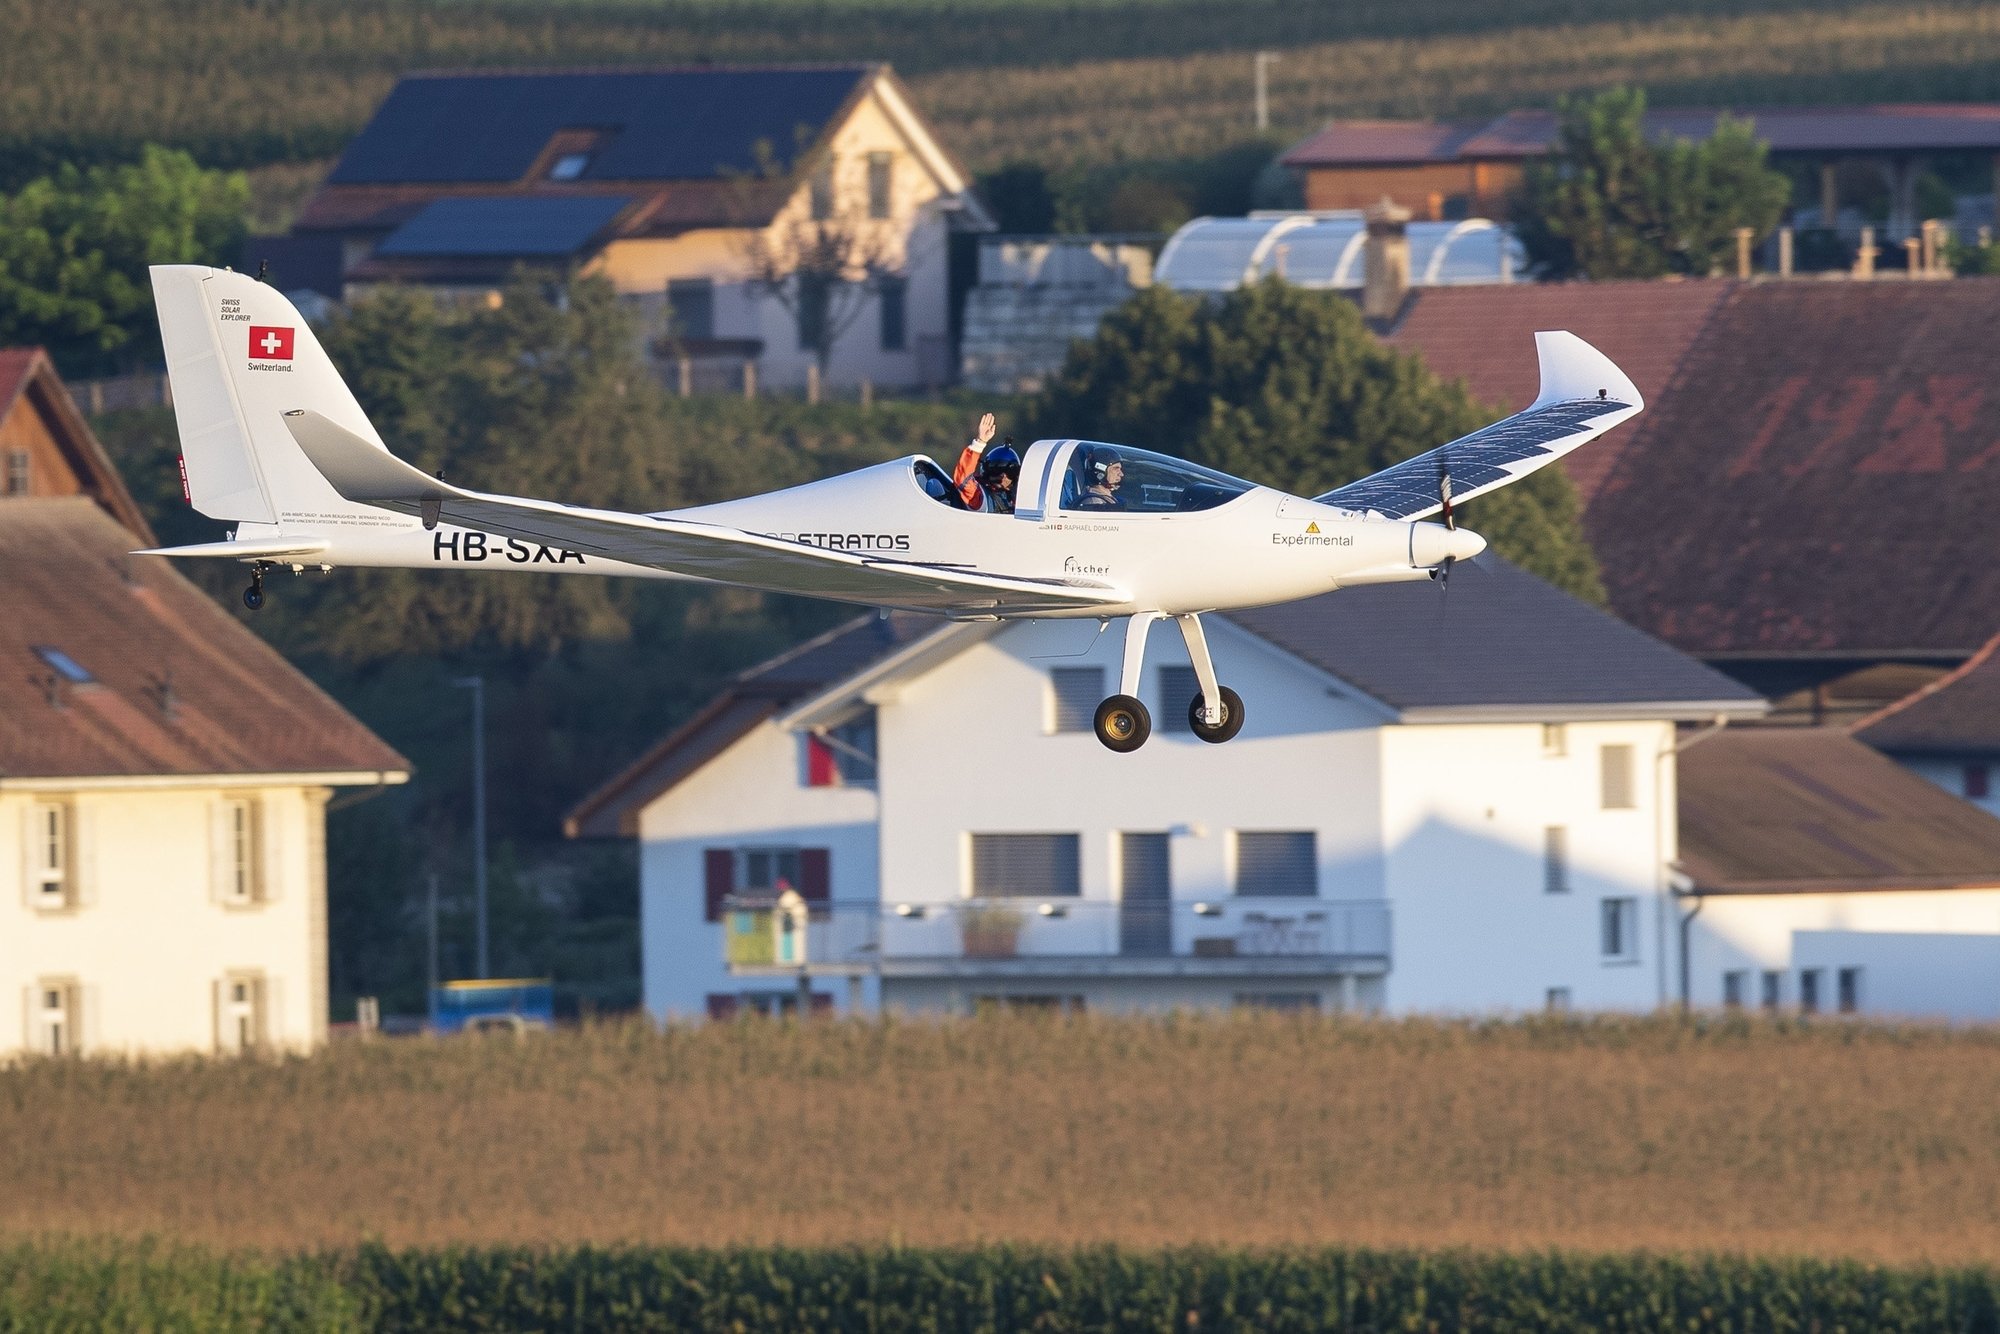 Ce jeudi 20 août à 7h00, Raphaël Domjan a réalisé le premier vol en duo à bord de SolarStratos en tant que passager. Le pilote d'essai Miguel Iturmendi était au commande de l'avion solaire basé à Payerne.